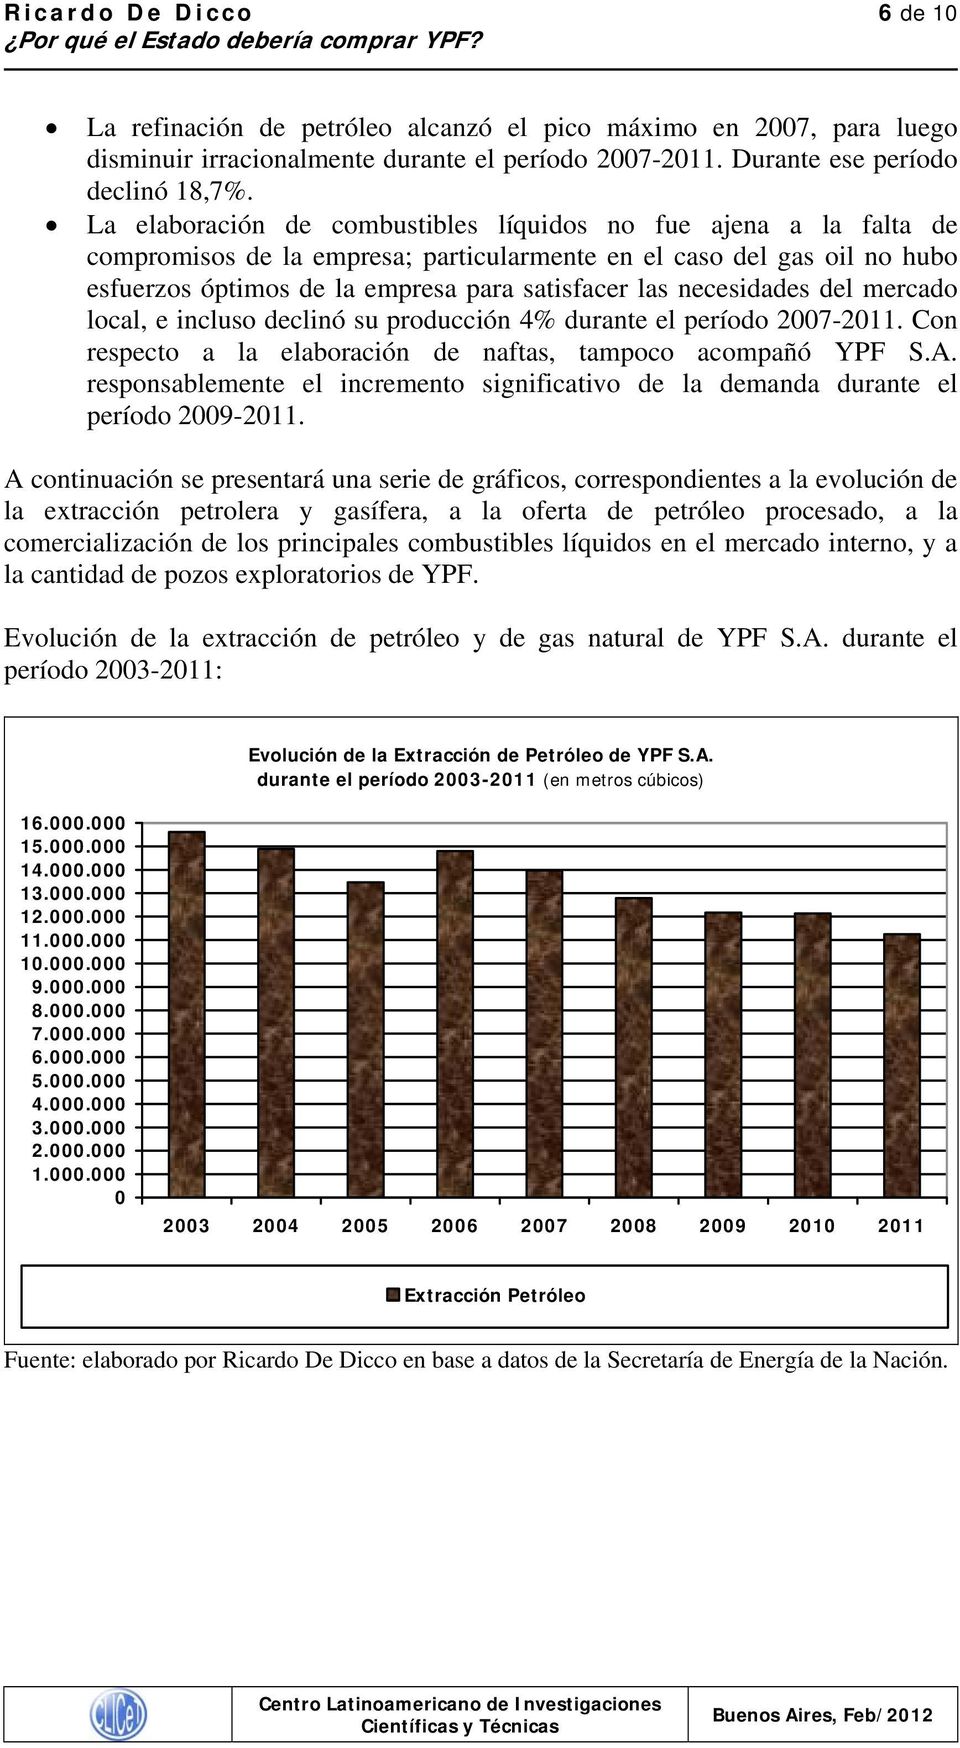 mercad lcal, e inclus declinó su prducción 4% durante el períd 2007-2011. Cn respect a la elabración de naftas, tampc acmpañó YPF S.A.